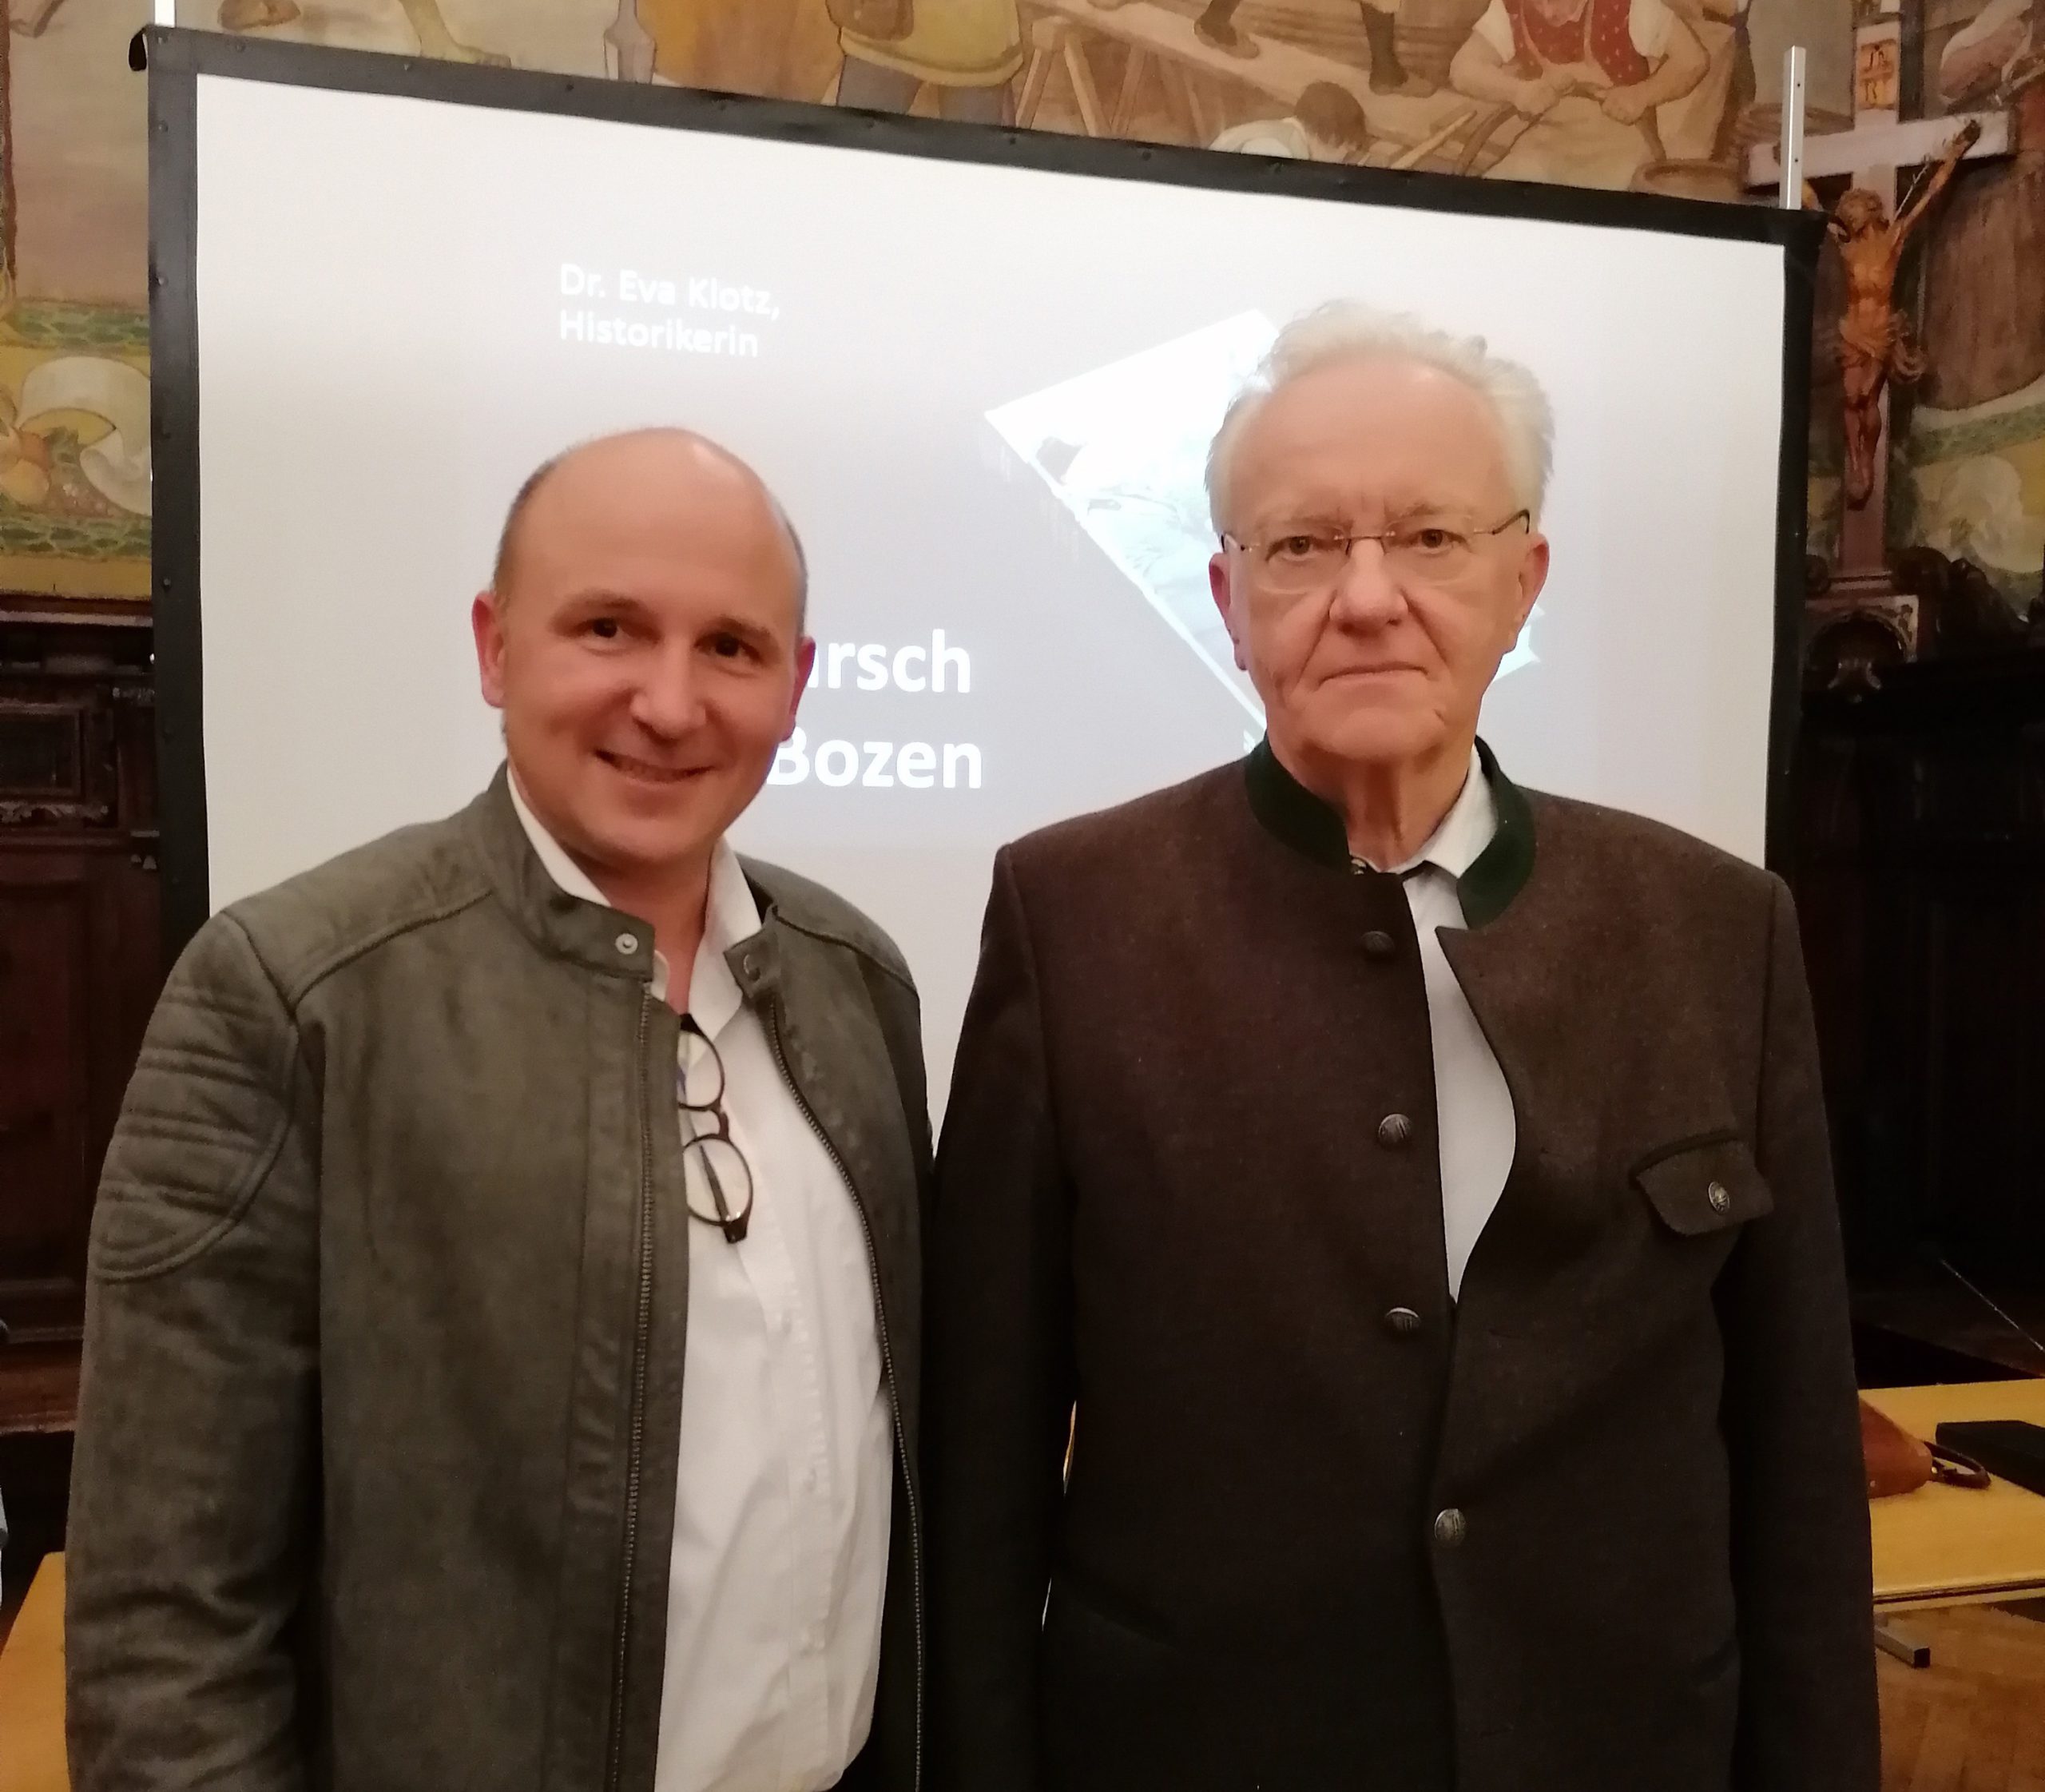 Dieses Bild zeigt mich (rechts) zusammen mit dem Verleger Elmar Thaler auf der Veranstaltung.